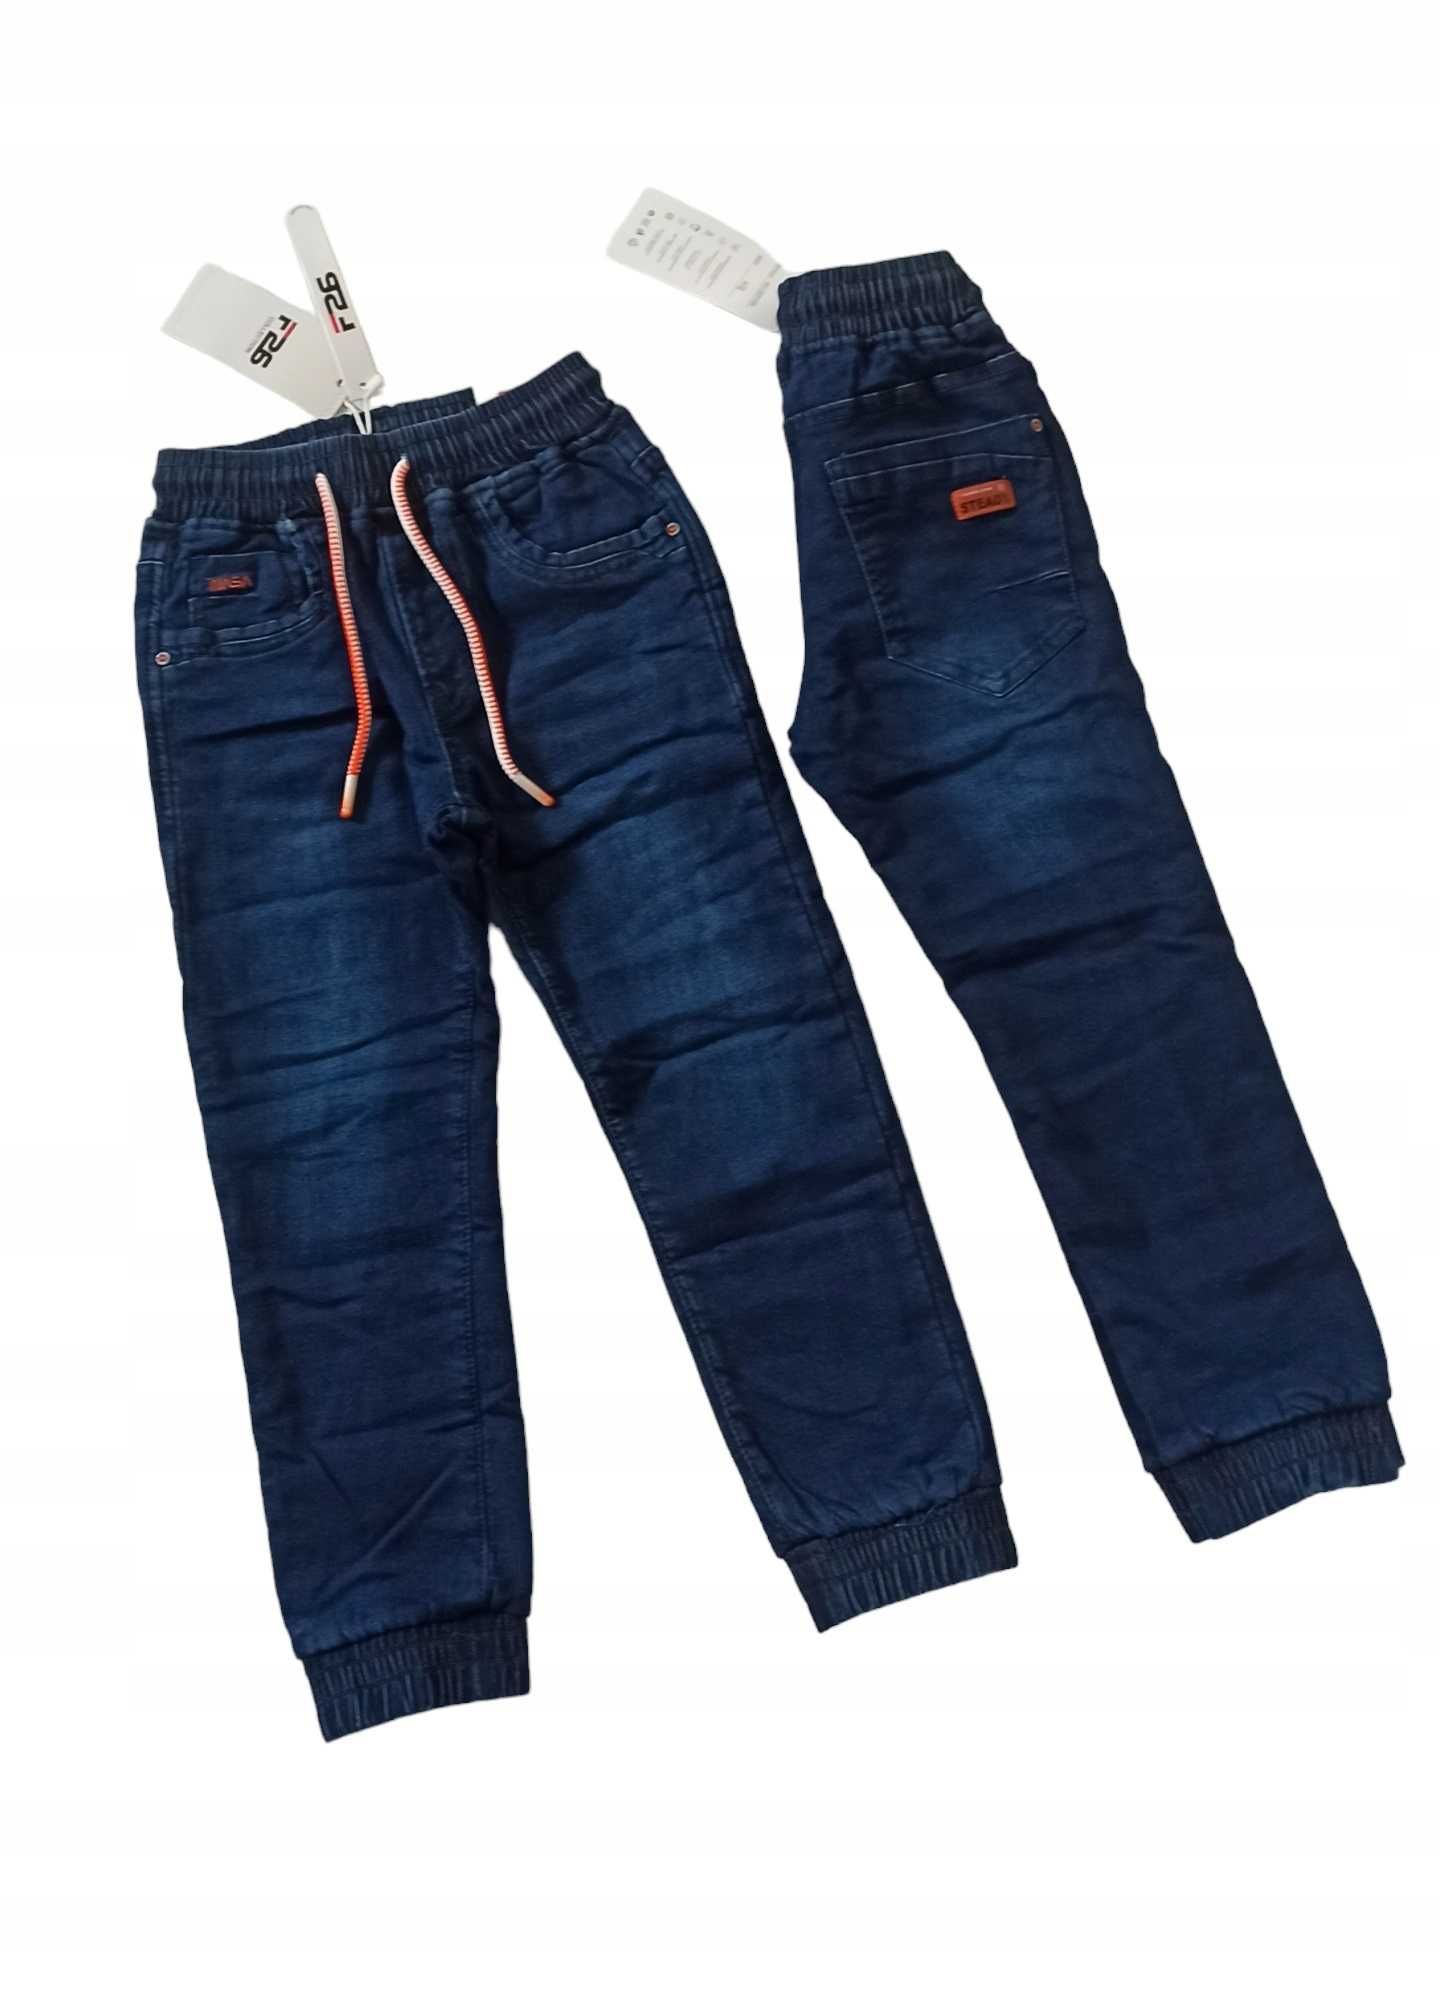 Spodnie Jeans miękkie elastyczne GUMA ocieplane polarem nowy r 110-116